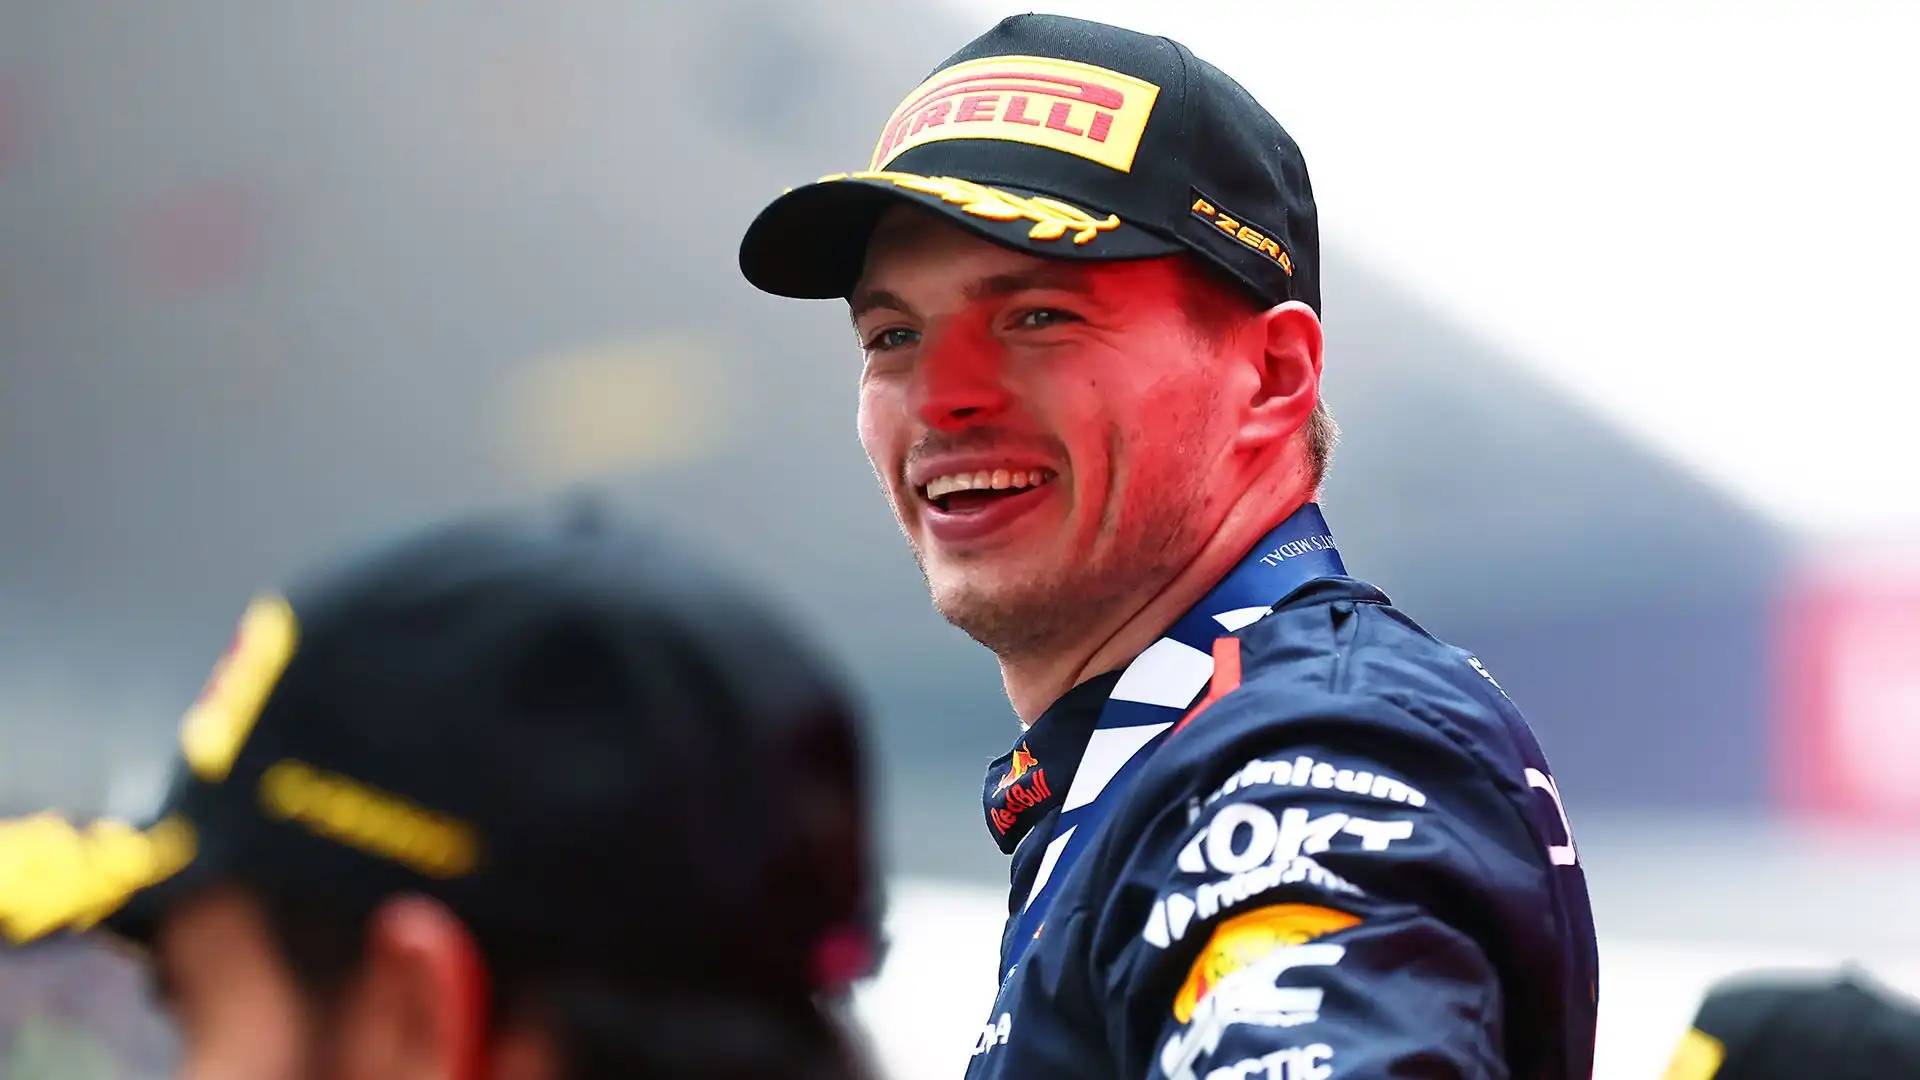 Le dichiarazioni di Wolff non sono affatto piaciute al team principal della Red Bull Christian Horner, che in conferenza stampa ha risposto